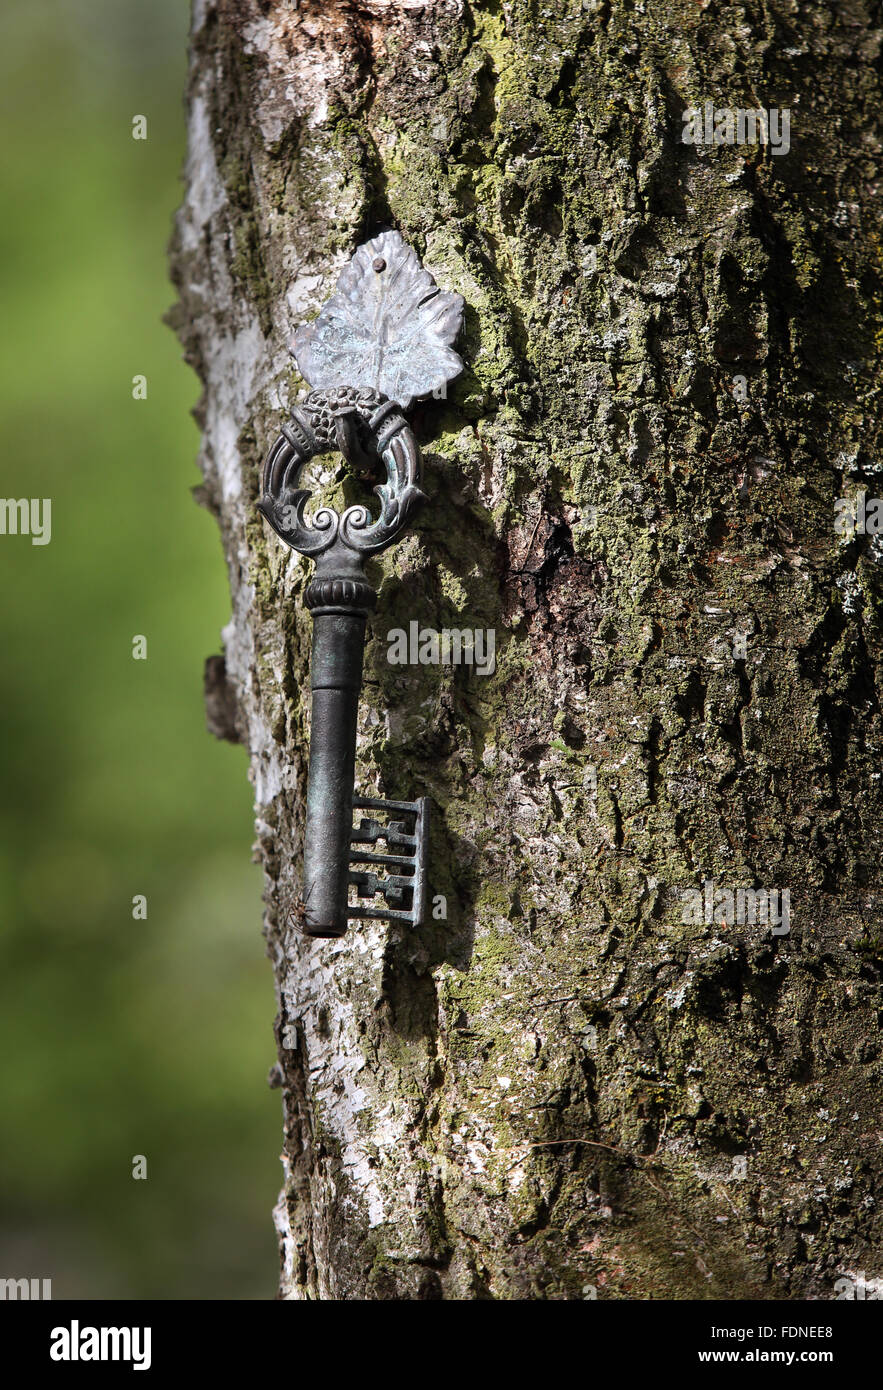 Berlín, Alemania, antiguas llaves cuelga de un tronco de árbol Foto de stock